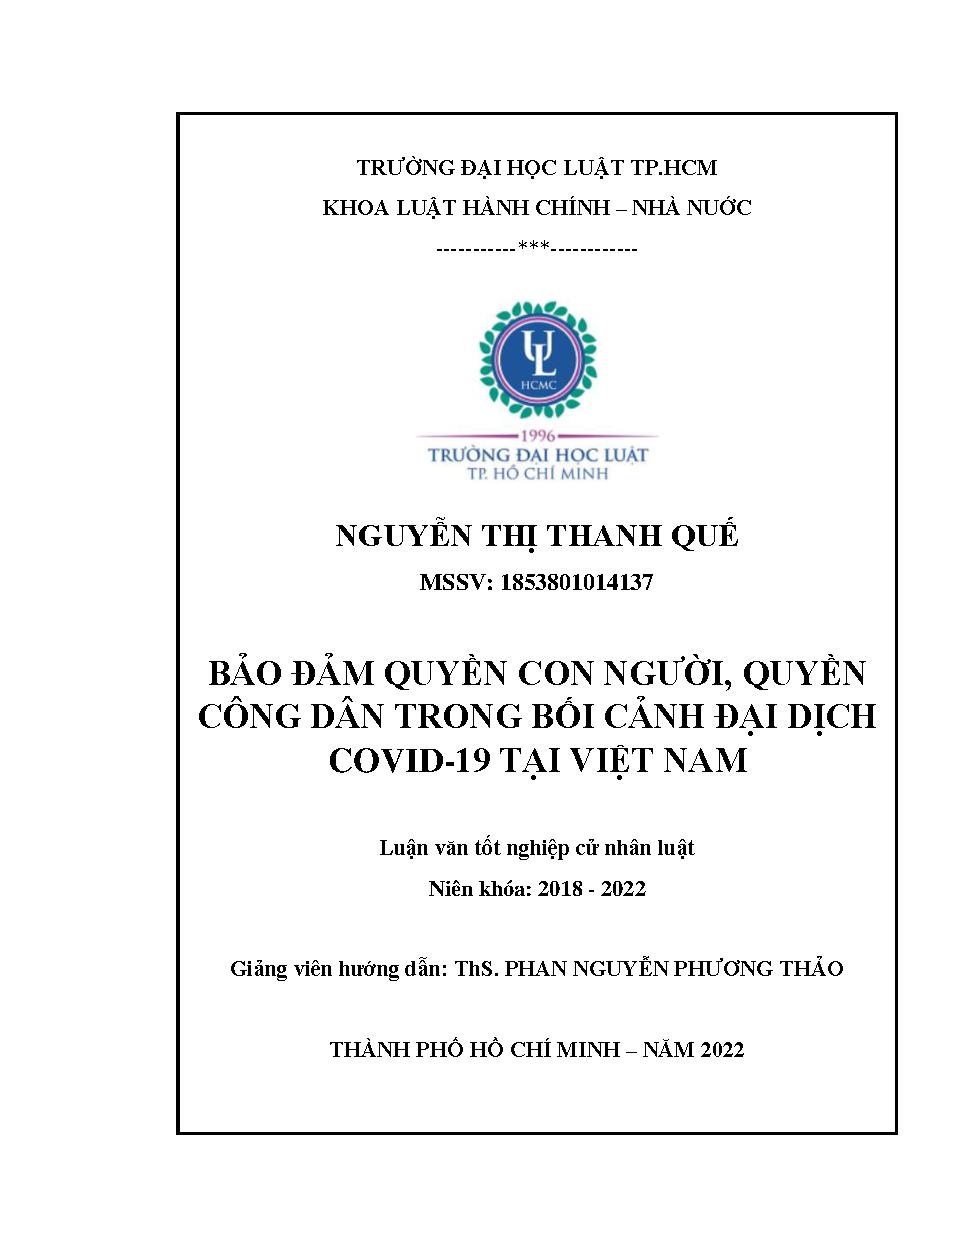 Bảo đảm quyền con người, quyền công dân trong bối cảnh đại dịch Covid-19 tại Việt Nam